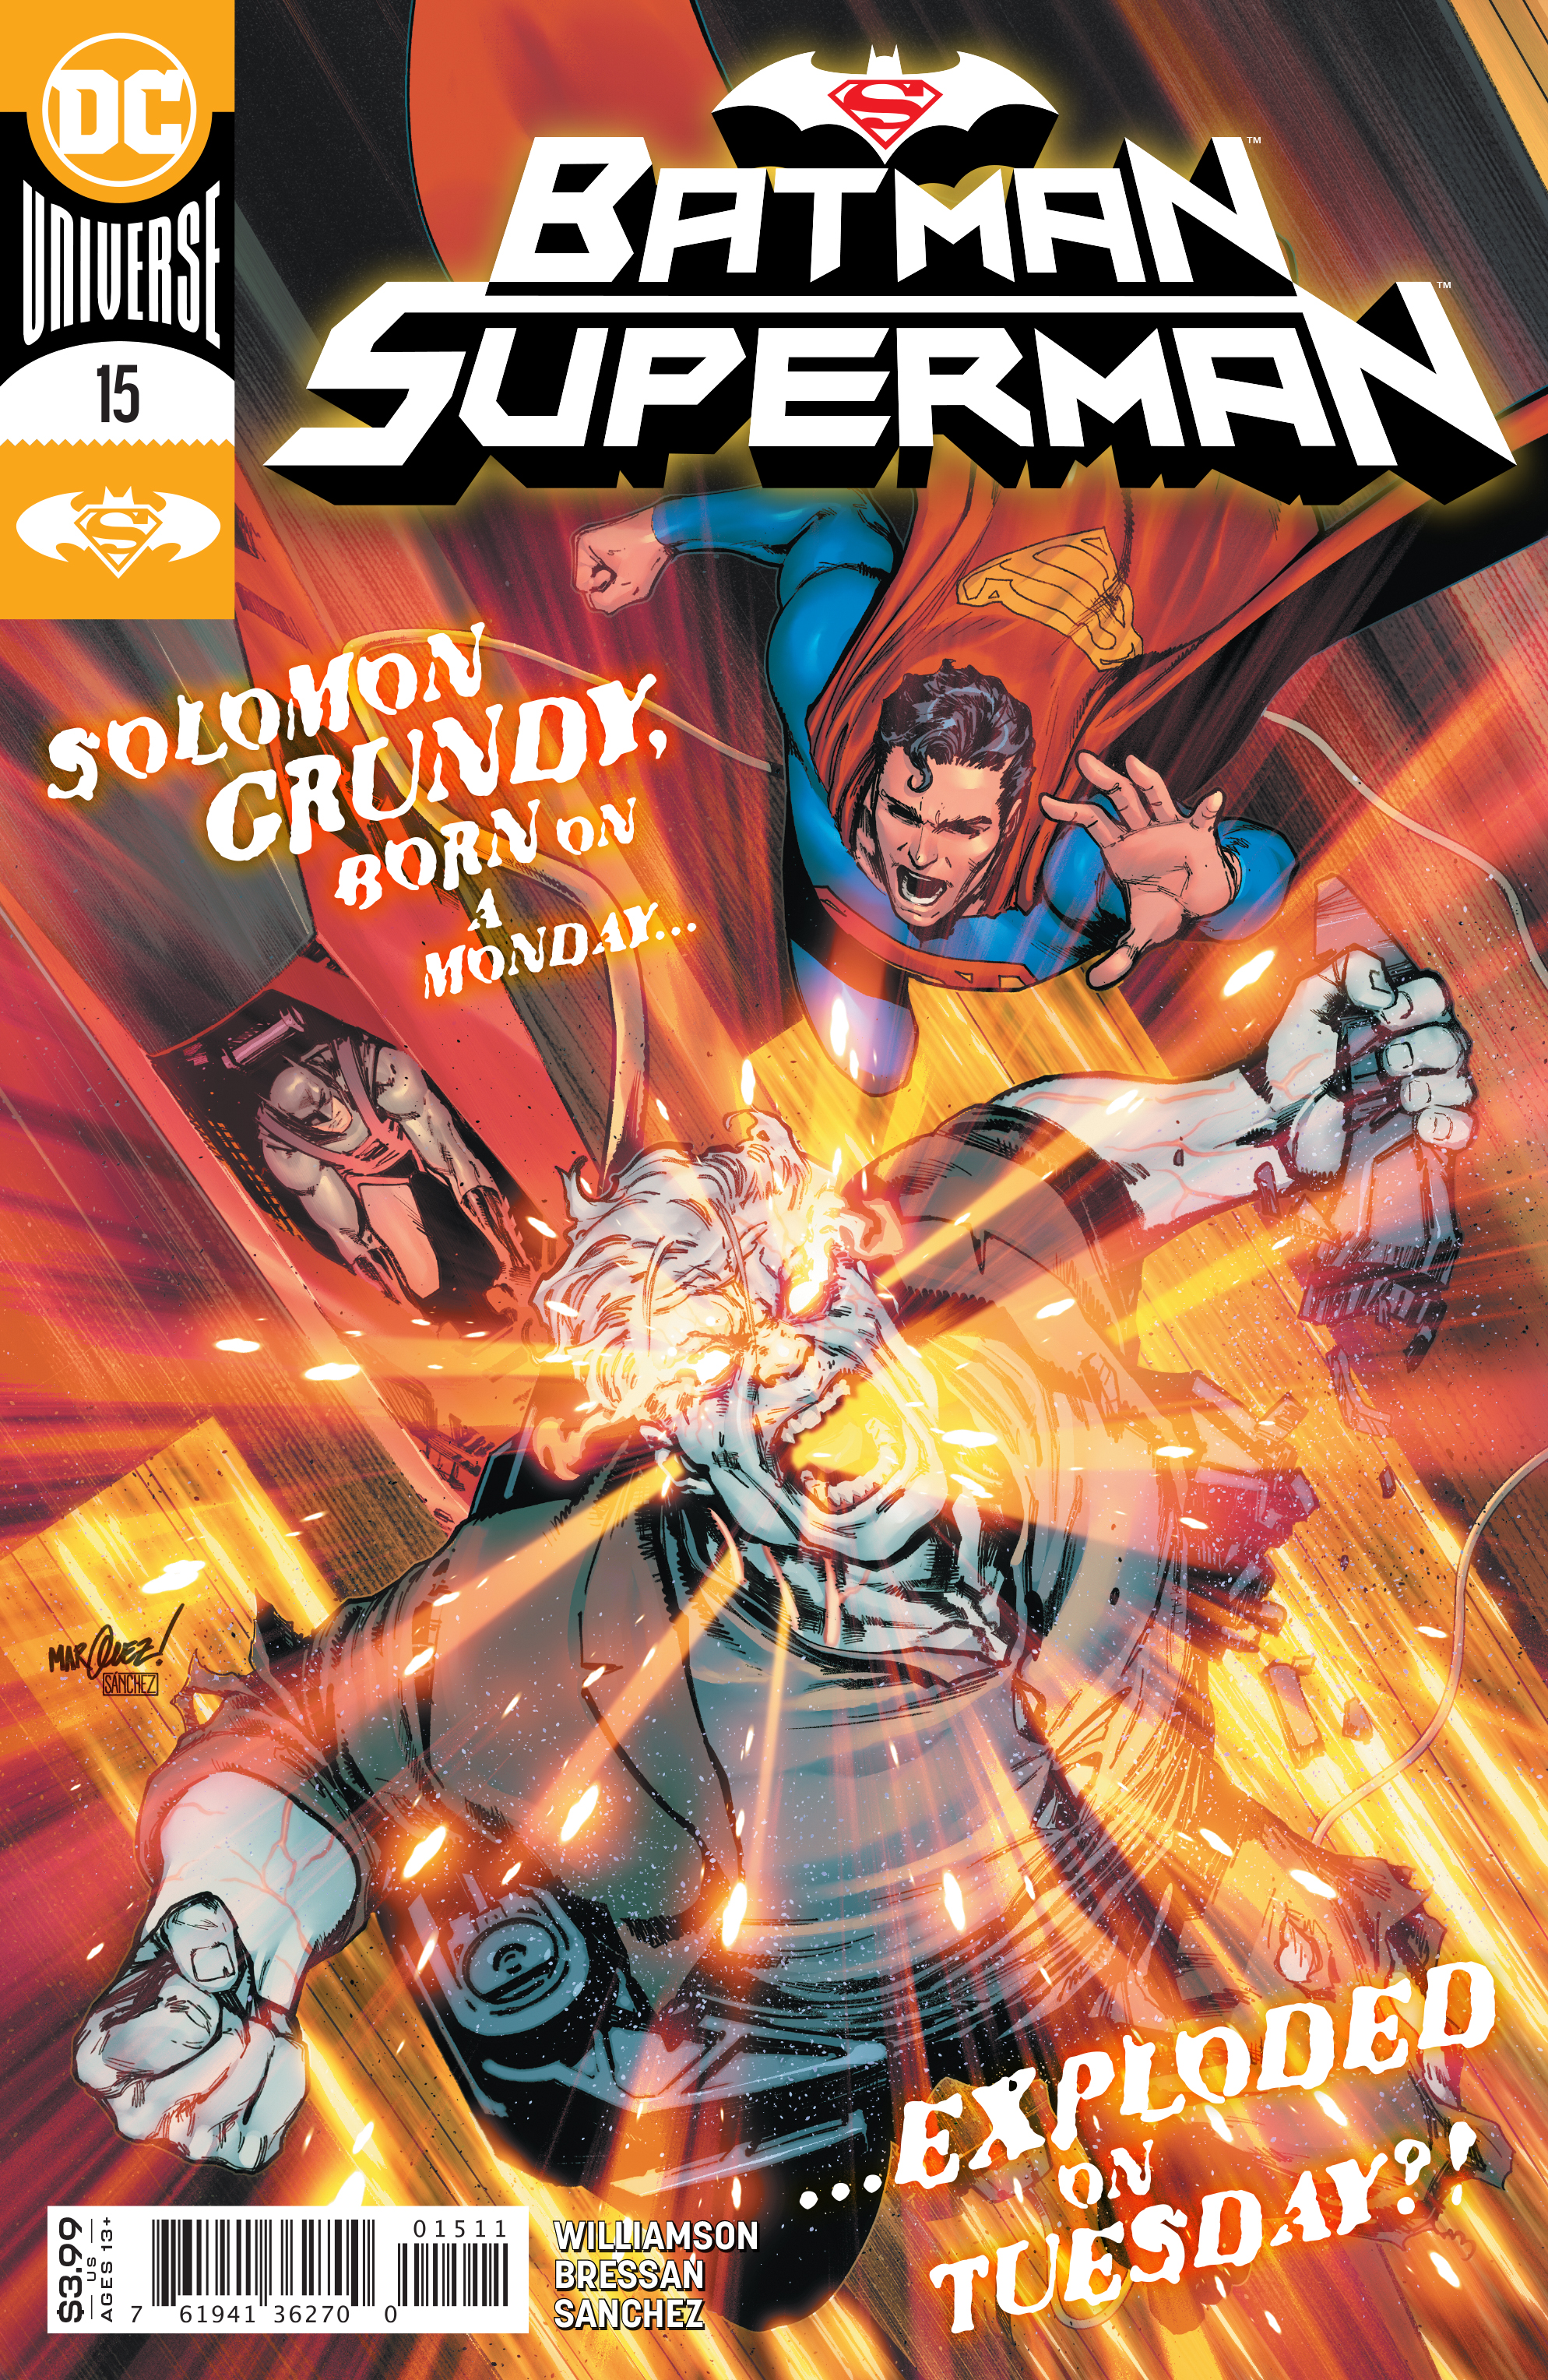 Batman Superman #15 Cover A David Marquez (2019)